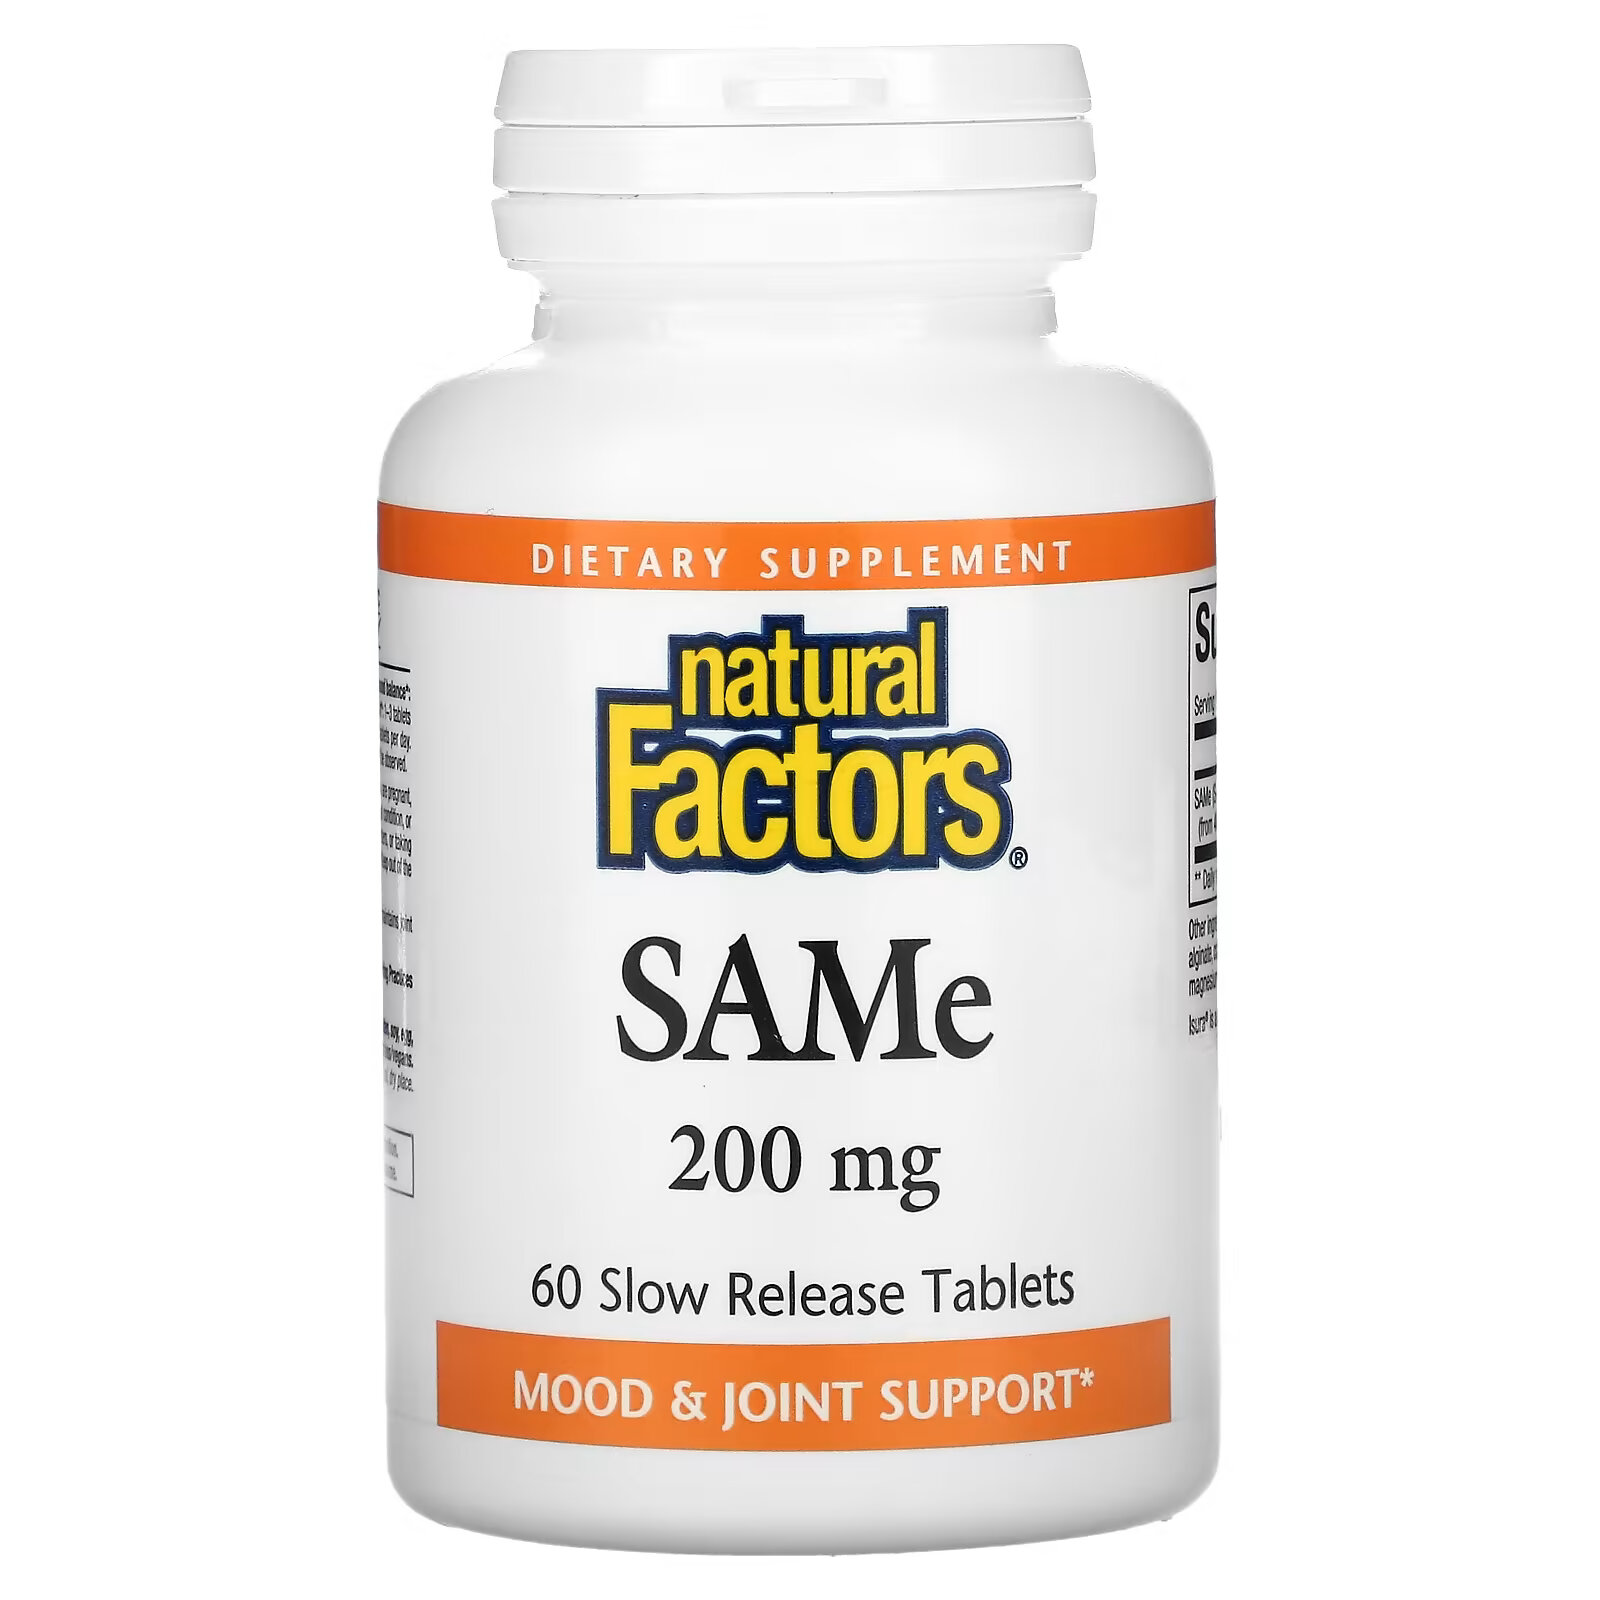 jarrow formulas same дисульфат тозилат 200 мг 20 таблеток покрытых кишечнорастворимой оболочкой Natural Factors, SAMe (дисульфат тозилат), 200 мг, 60 таблеток с медленным высвобождением